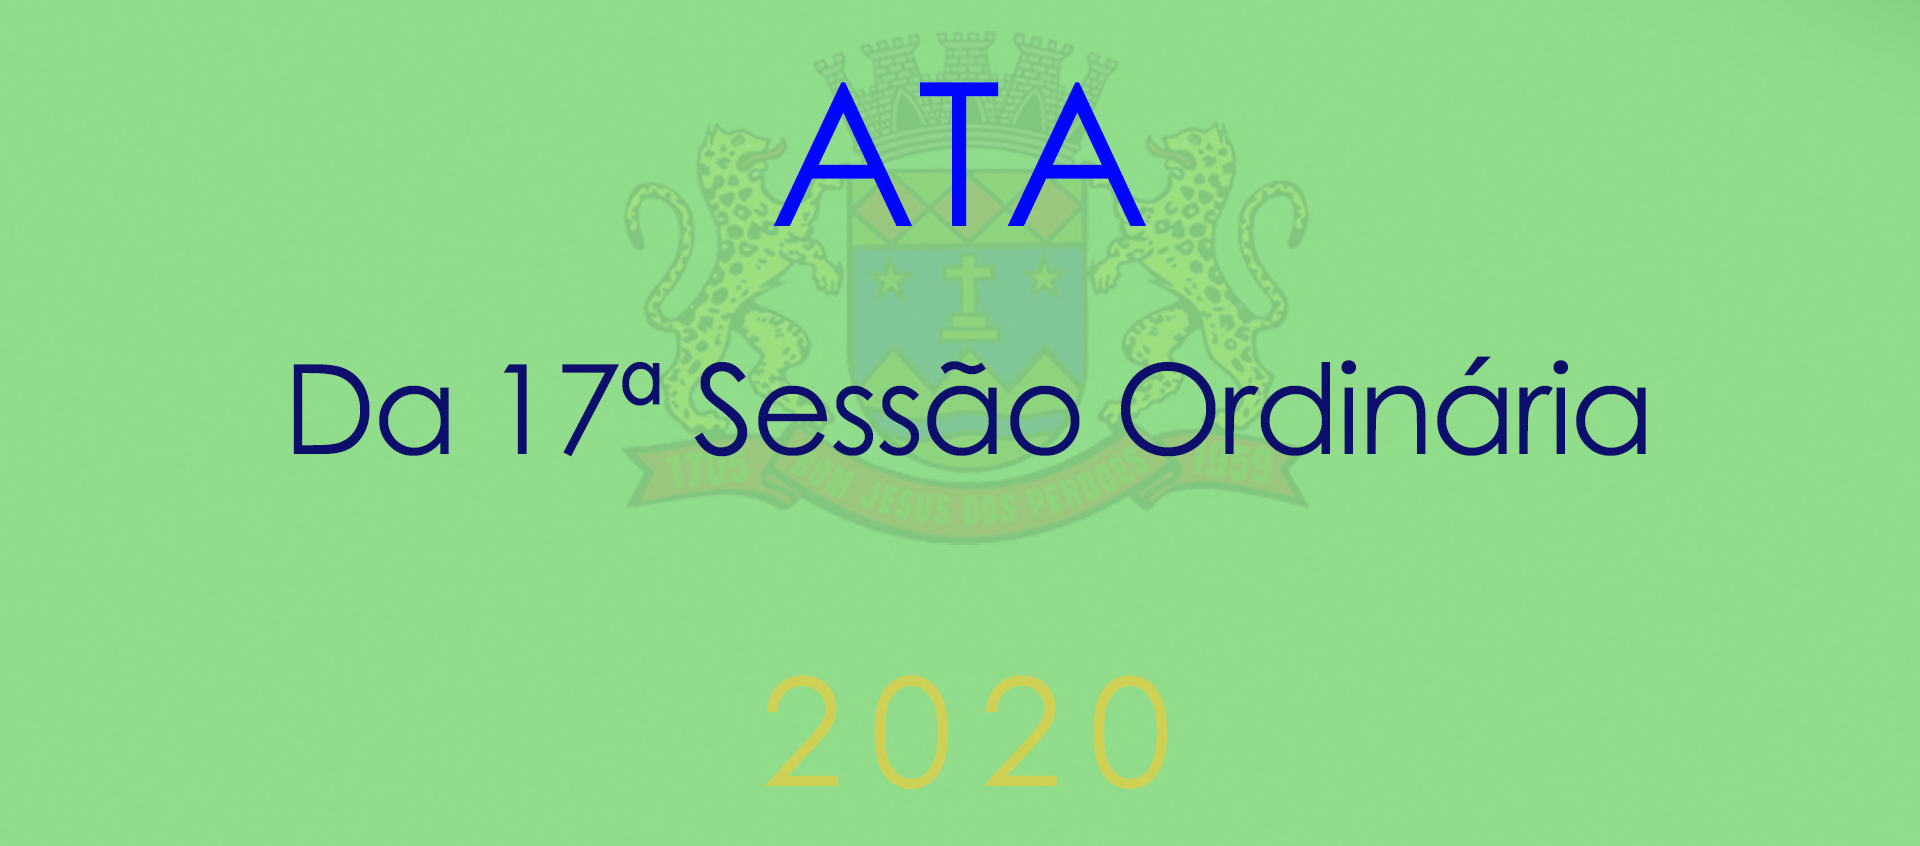 Ata da 17ª Sessão Ordinária - 2020